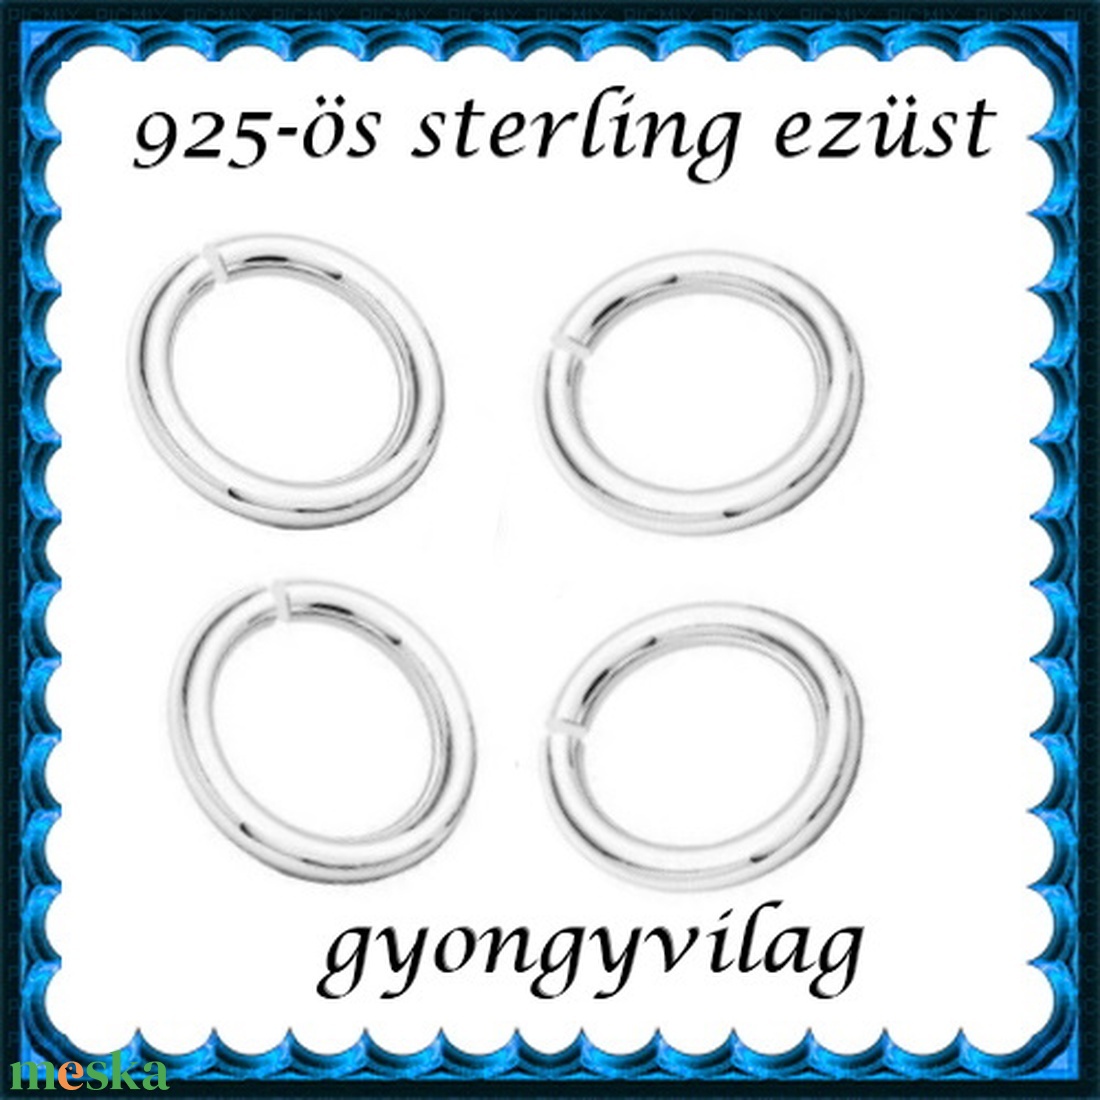 925-ös sterling ezüst ékszerkellék: karika nyitott ESZK NY 4,5x0,7 mm 4db/csomag - gyöngy, ékszerkellék - egyéb alkatrész - Meska.hu